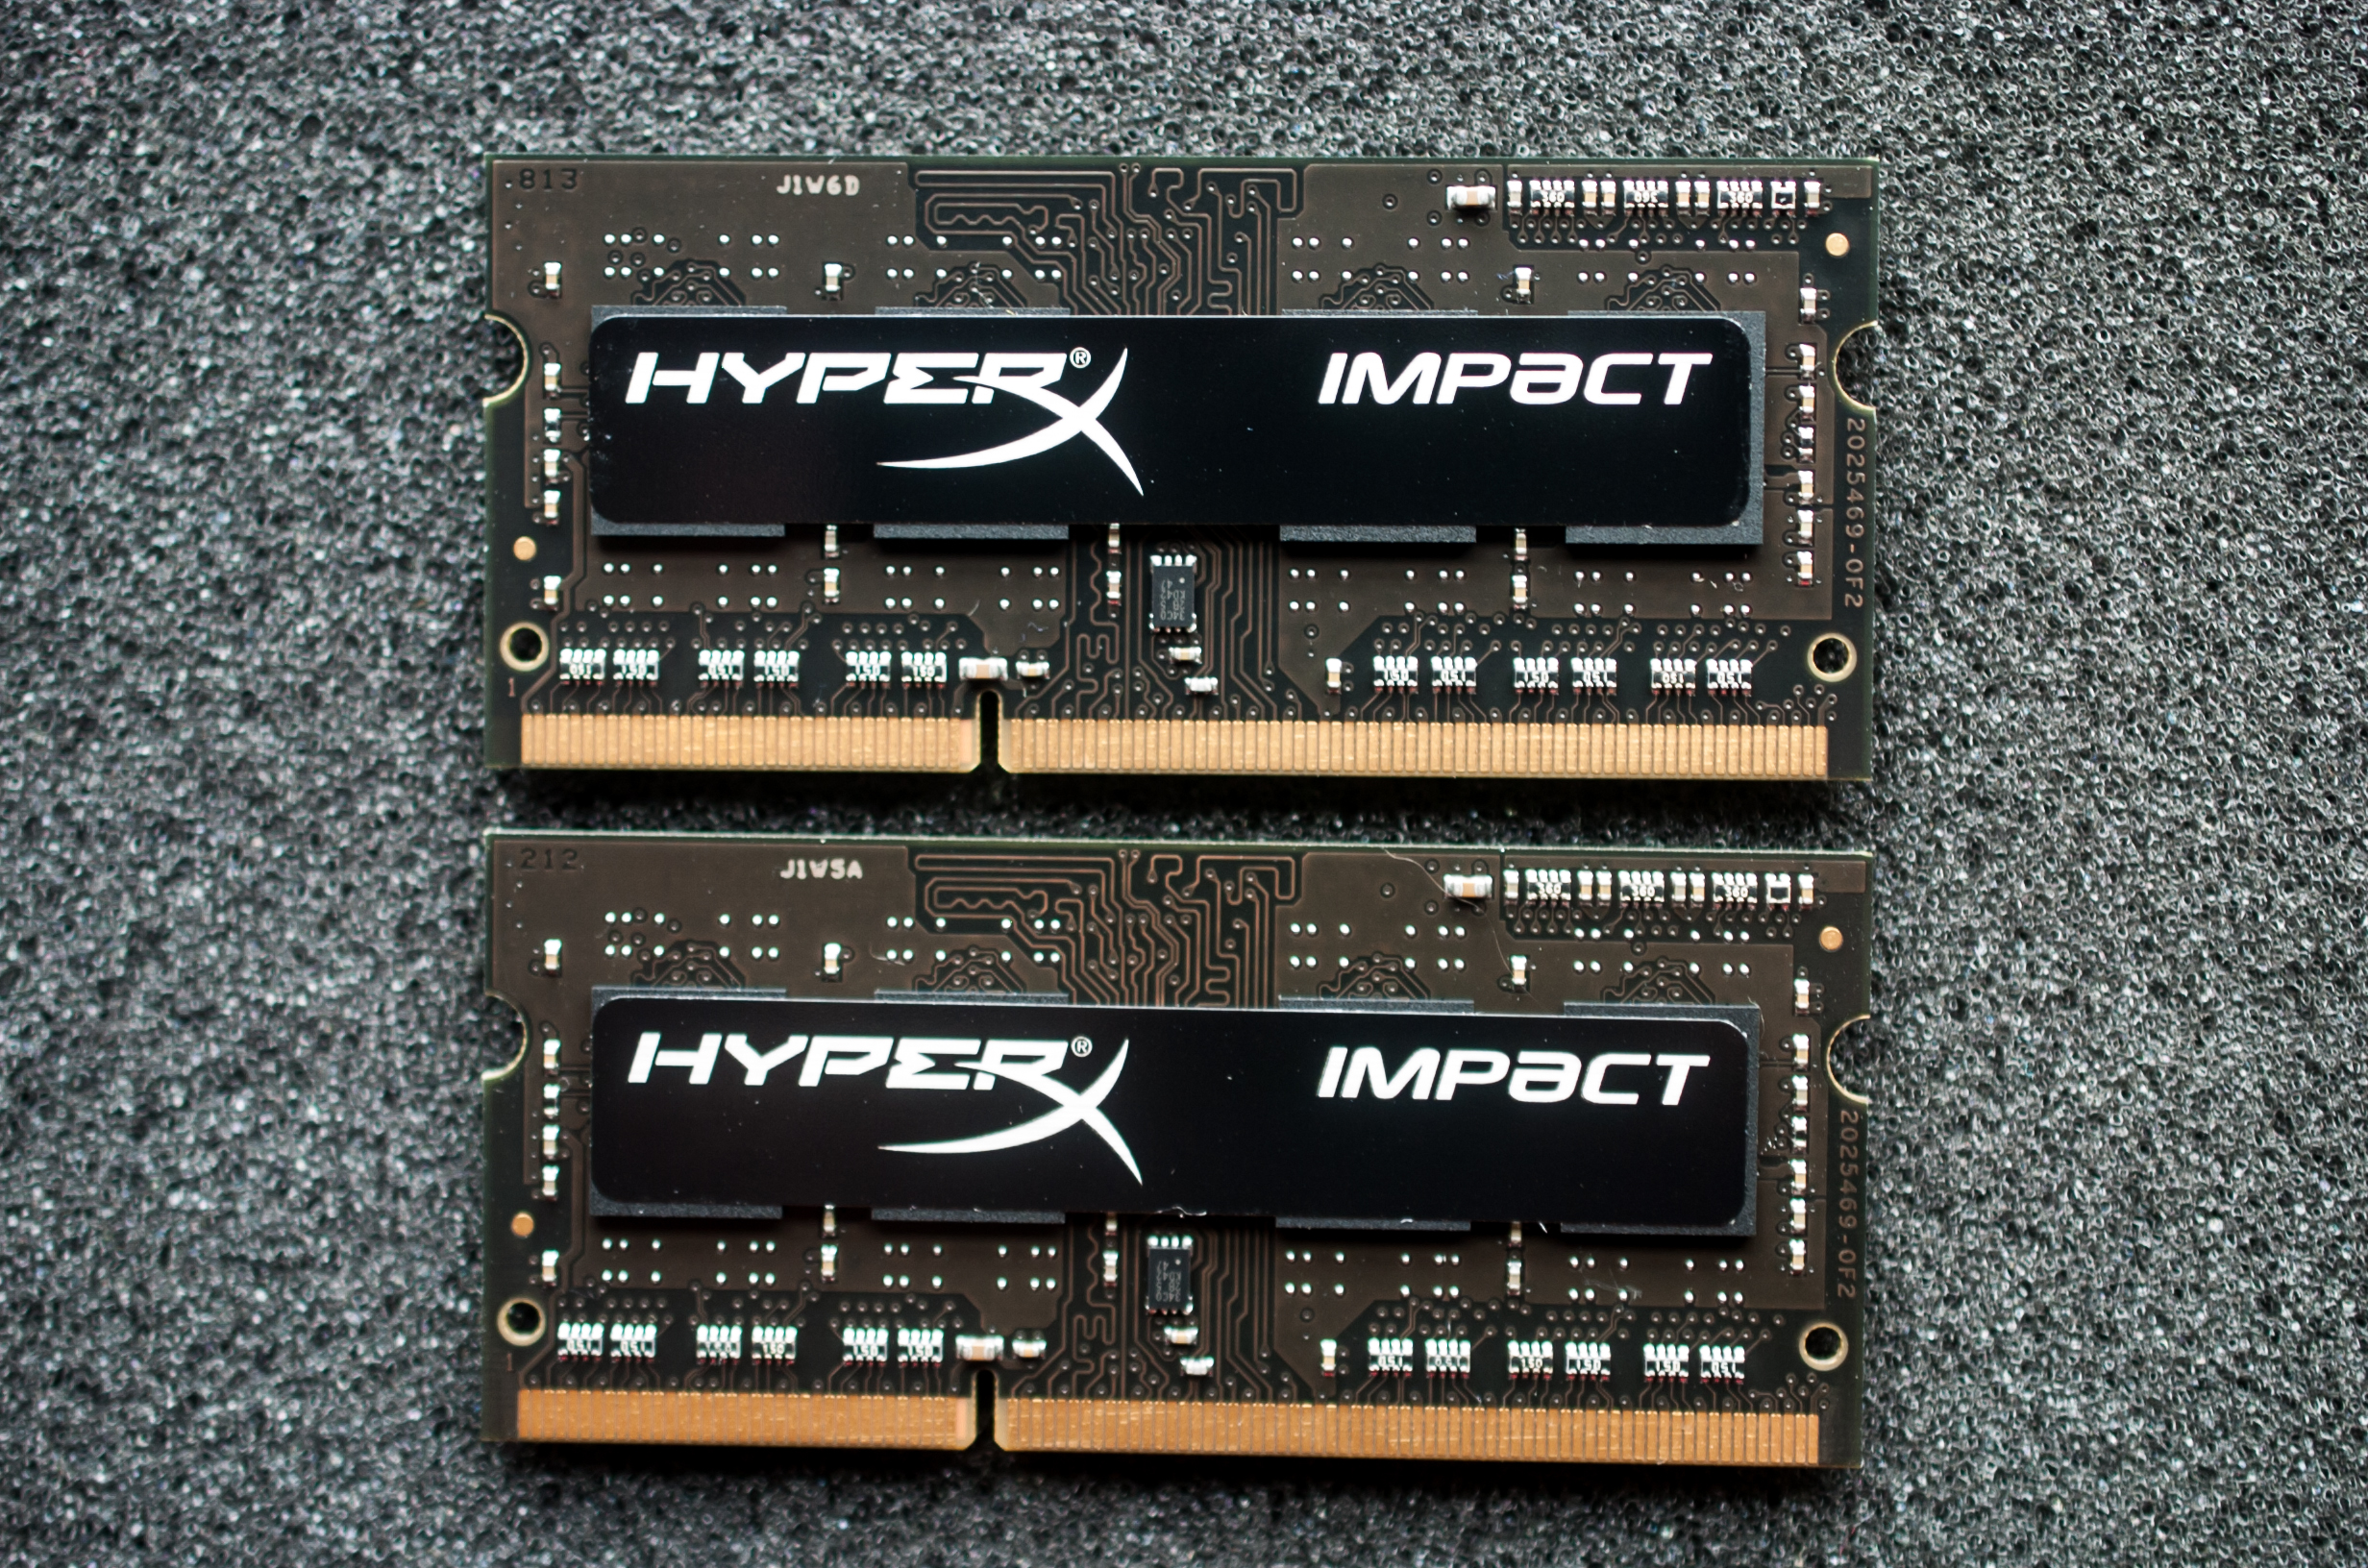 Mặt sau. Board của HyperX Impact là màu đen nhưng đã bị các đường mạch màu nâu che gần hết